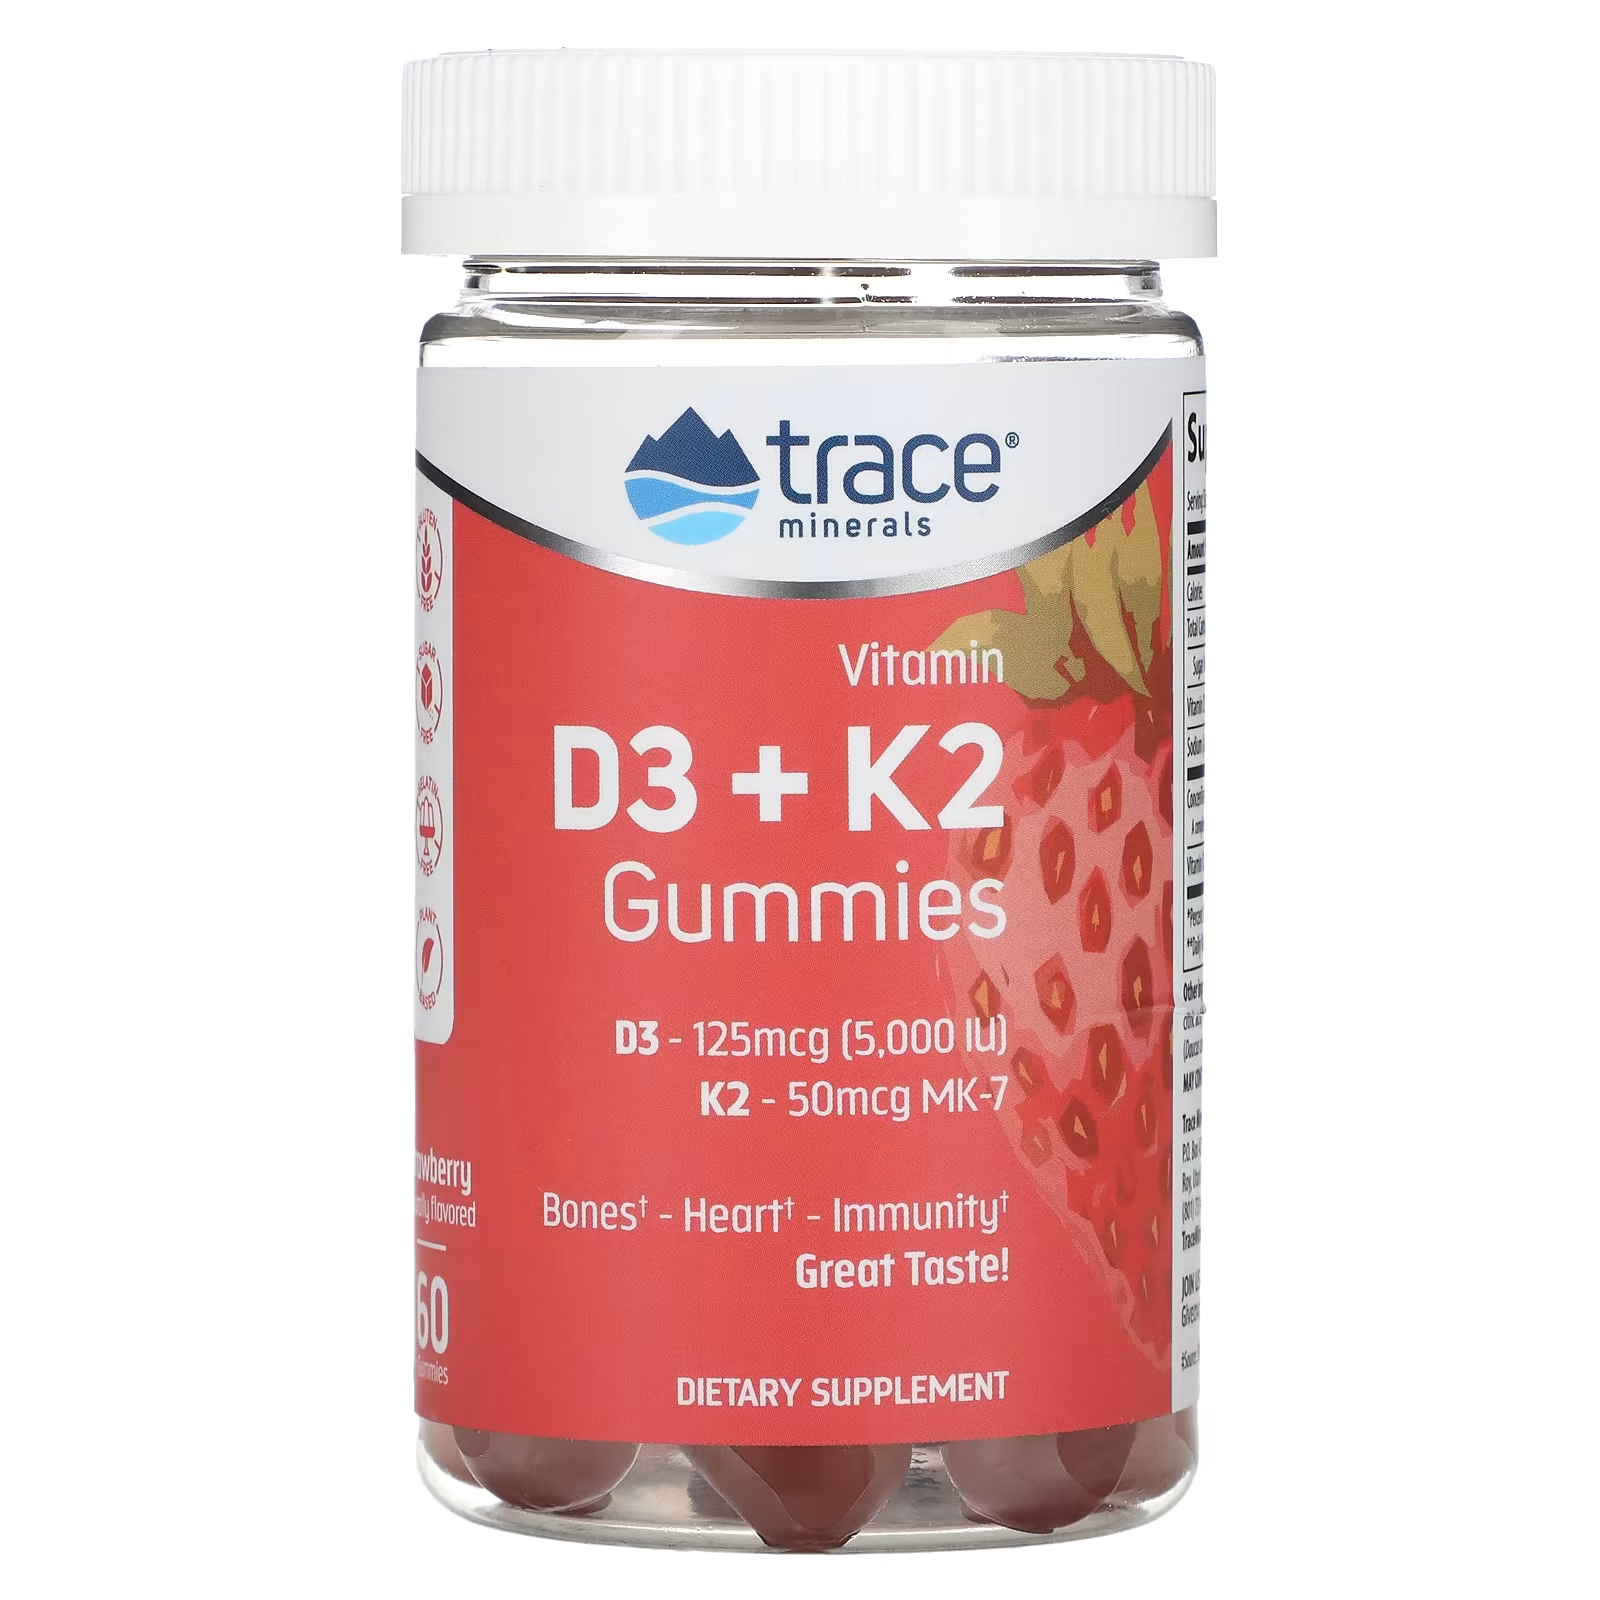 Жевательные конфеты Trace Minerals с витамином D3 + K2 клубника, 60 таблеток nature s way vitamin d3 max шоколад 125 мкг 5000 ме 90 таблеток без сахара